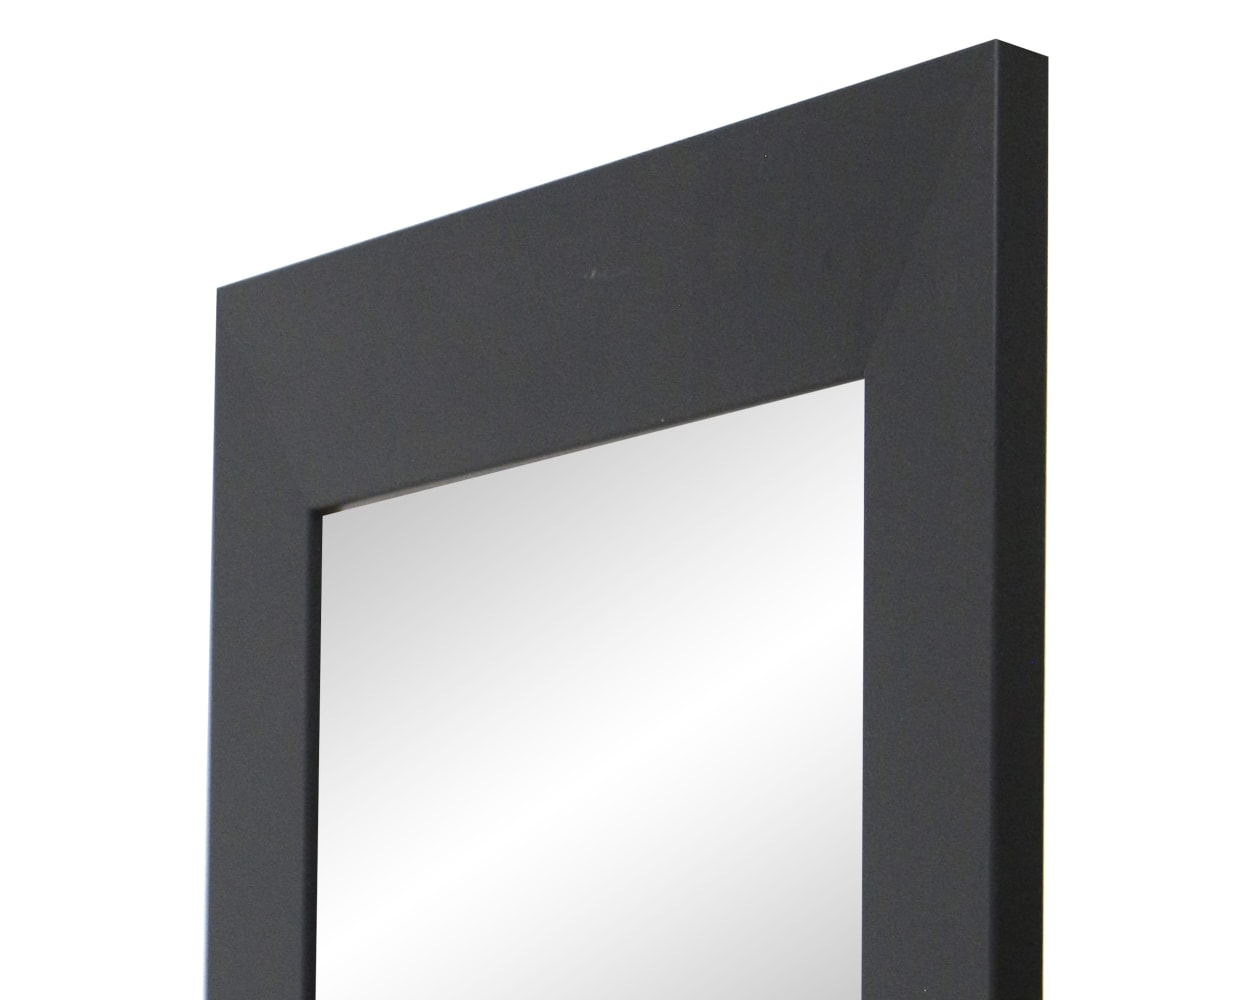 Espejo de Pared cuerpo entero- Modelo MDF8 color blanco de 55x150 cm